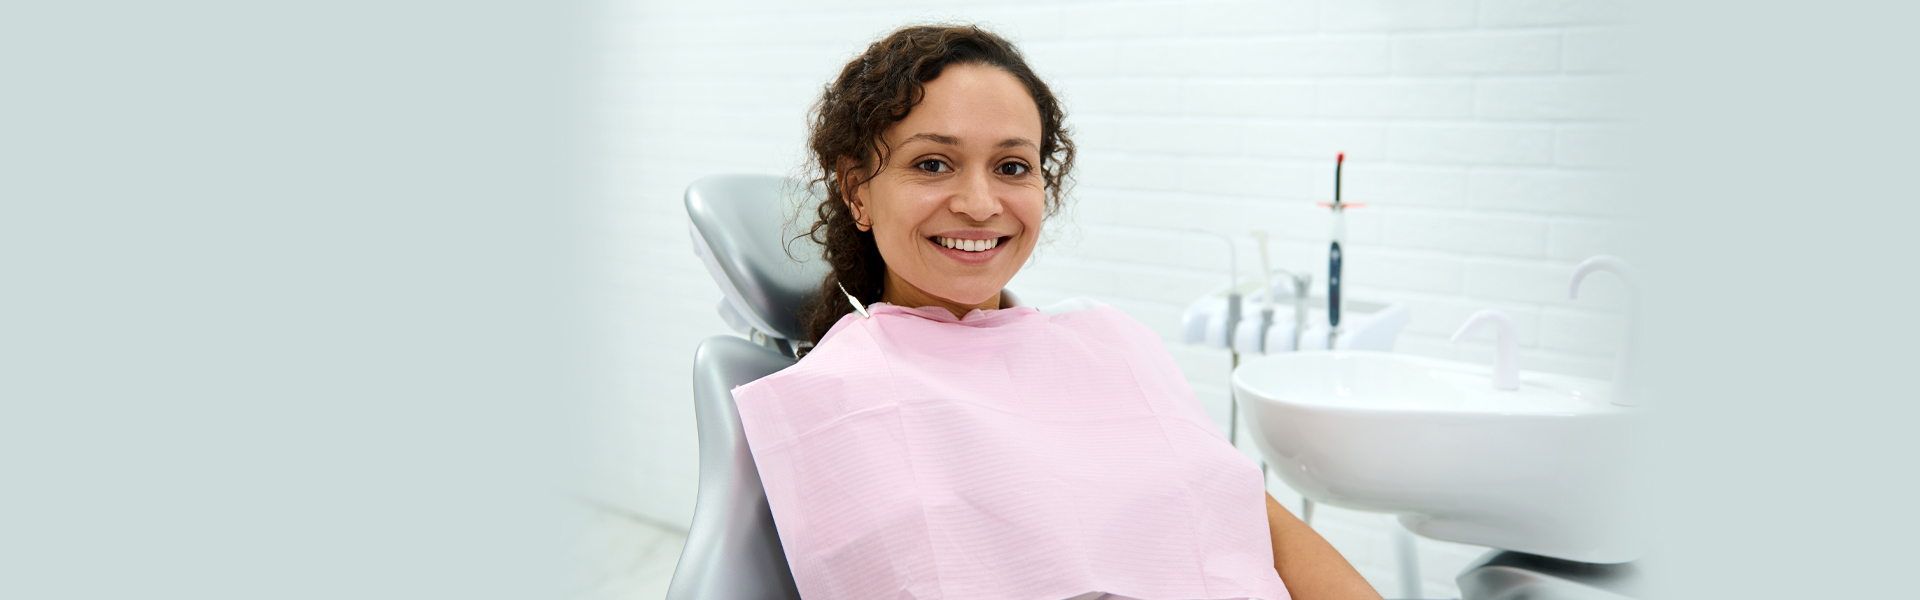 Tips on Proper Care of Dental Implants